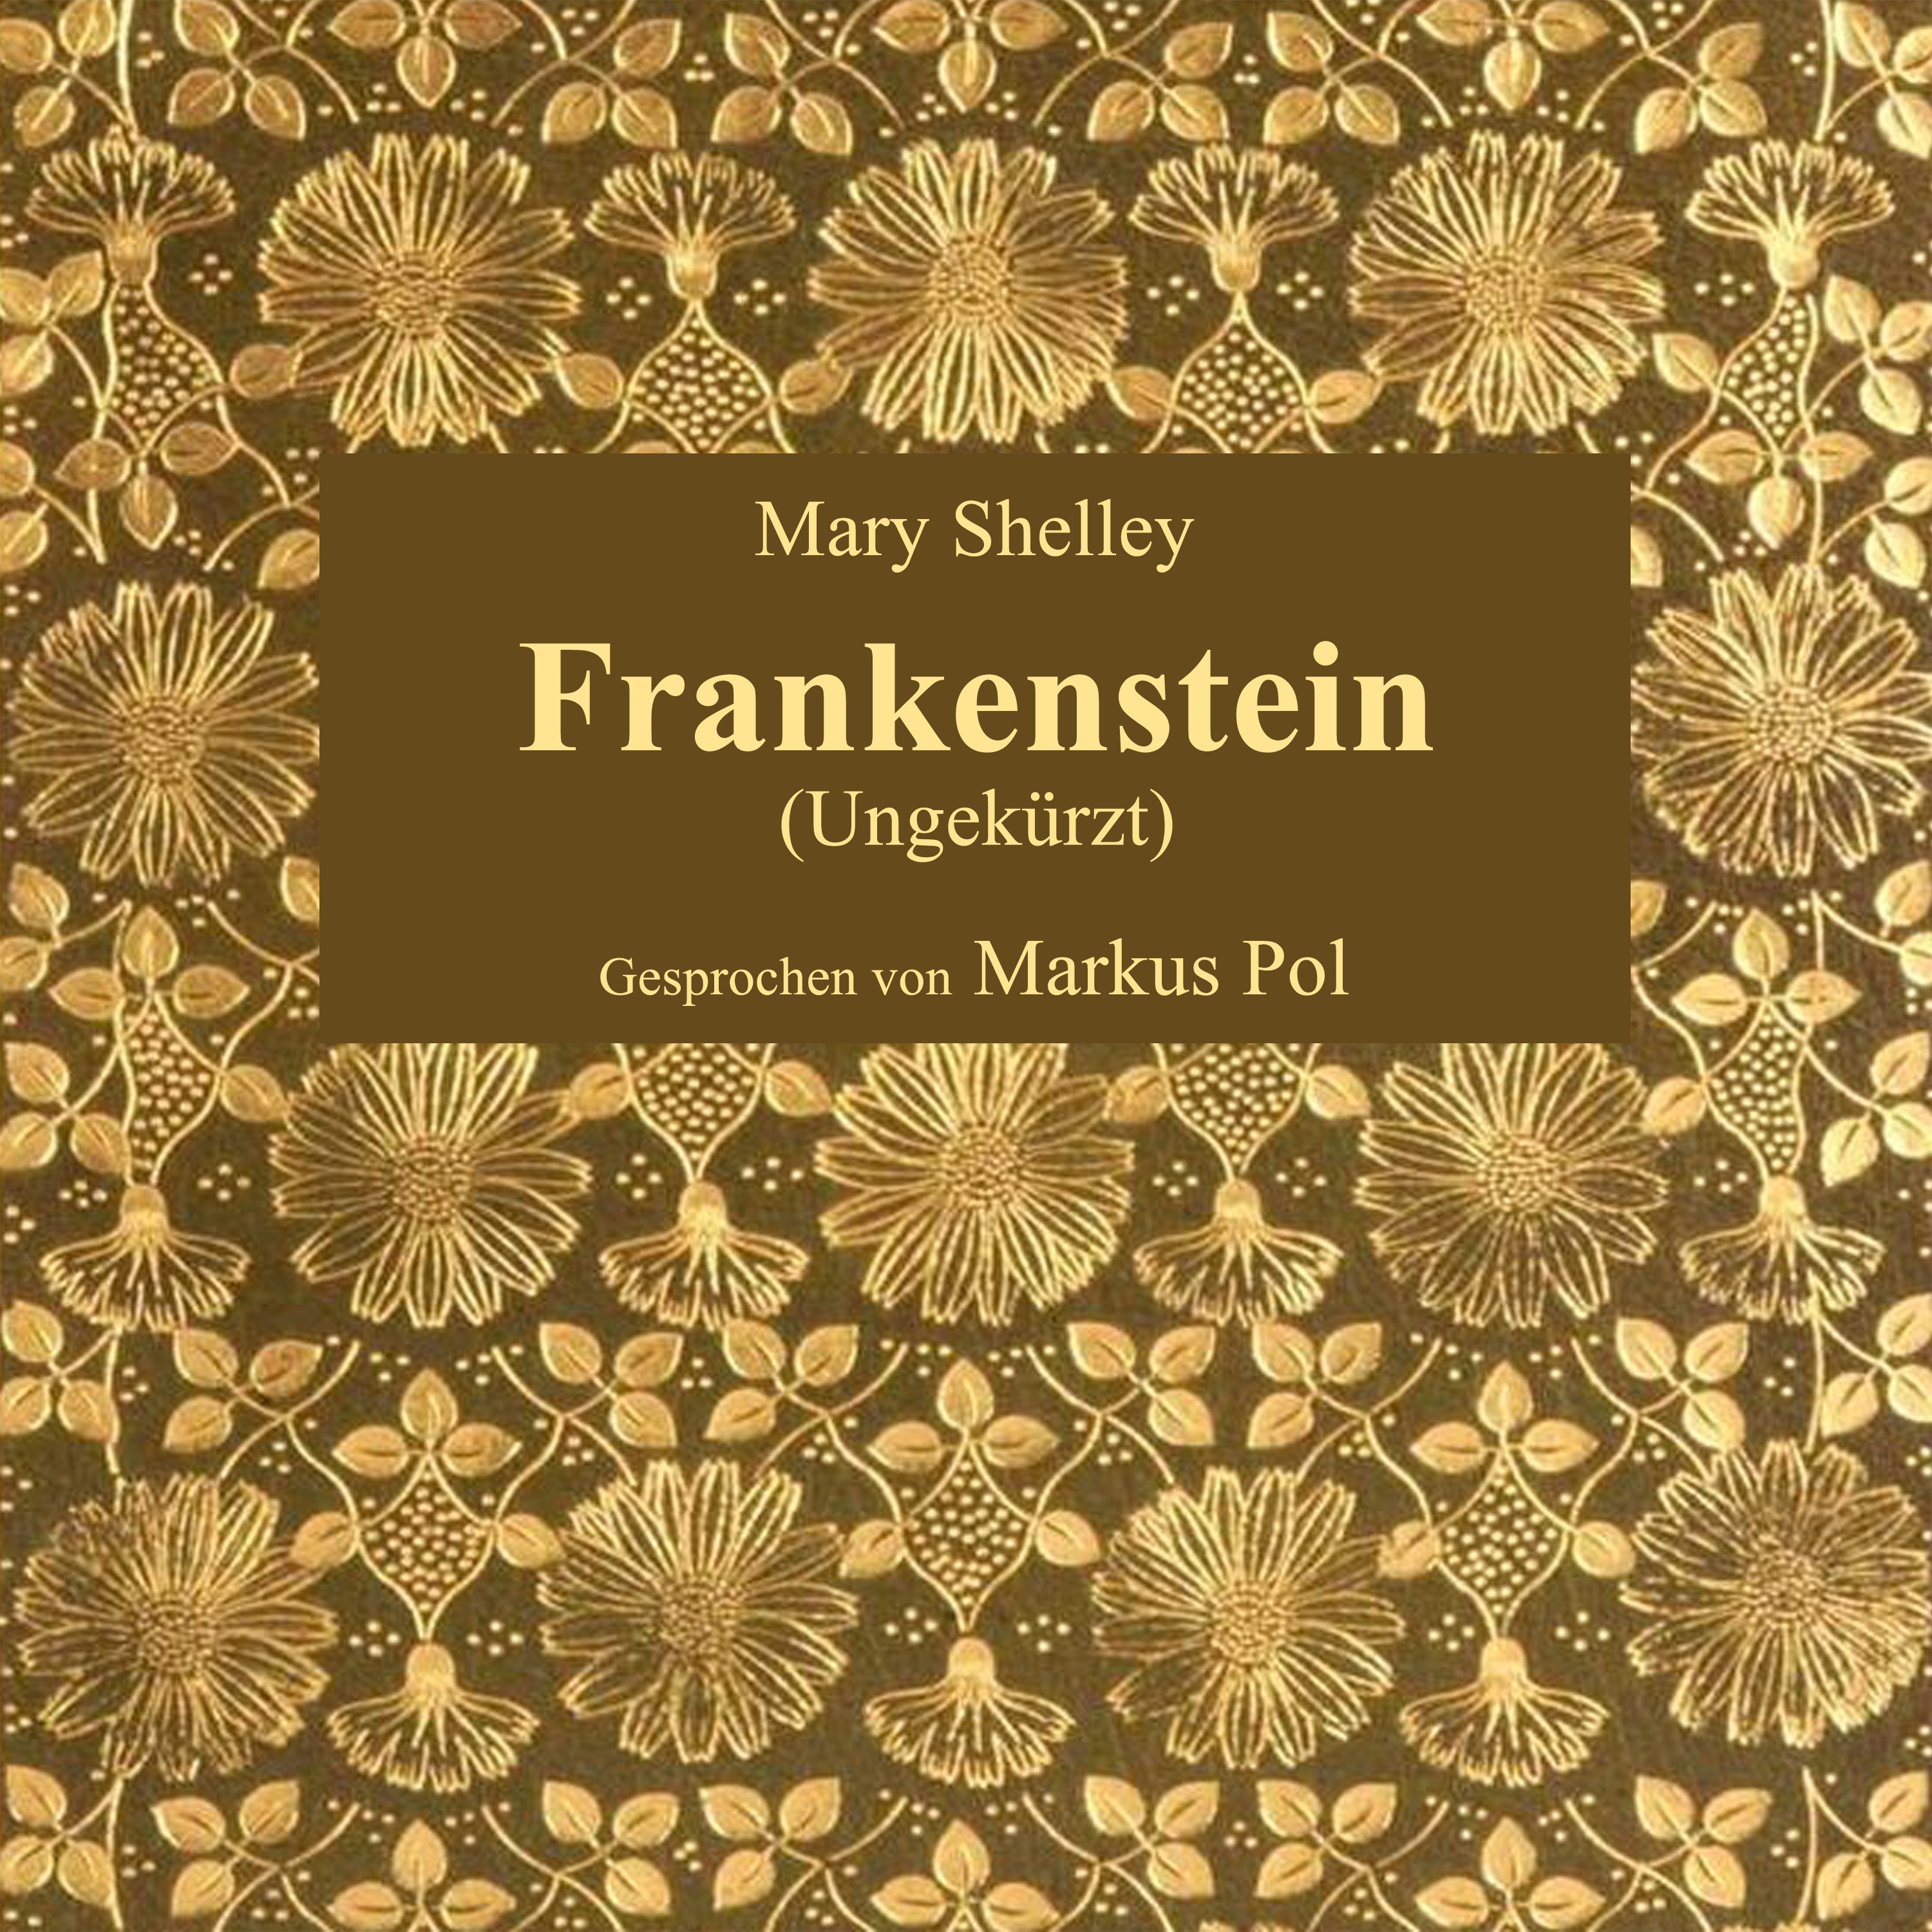 Kapitel 12: Frankenstein (Teil 15)